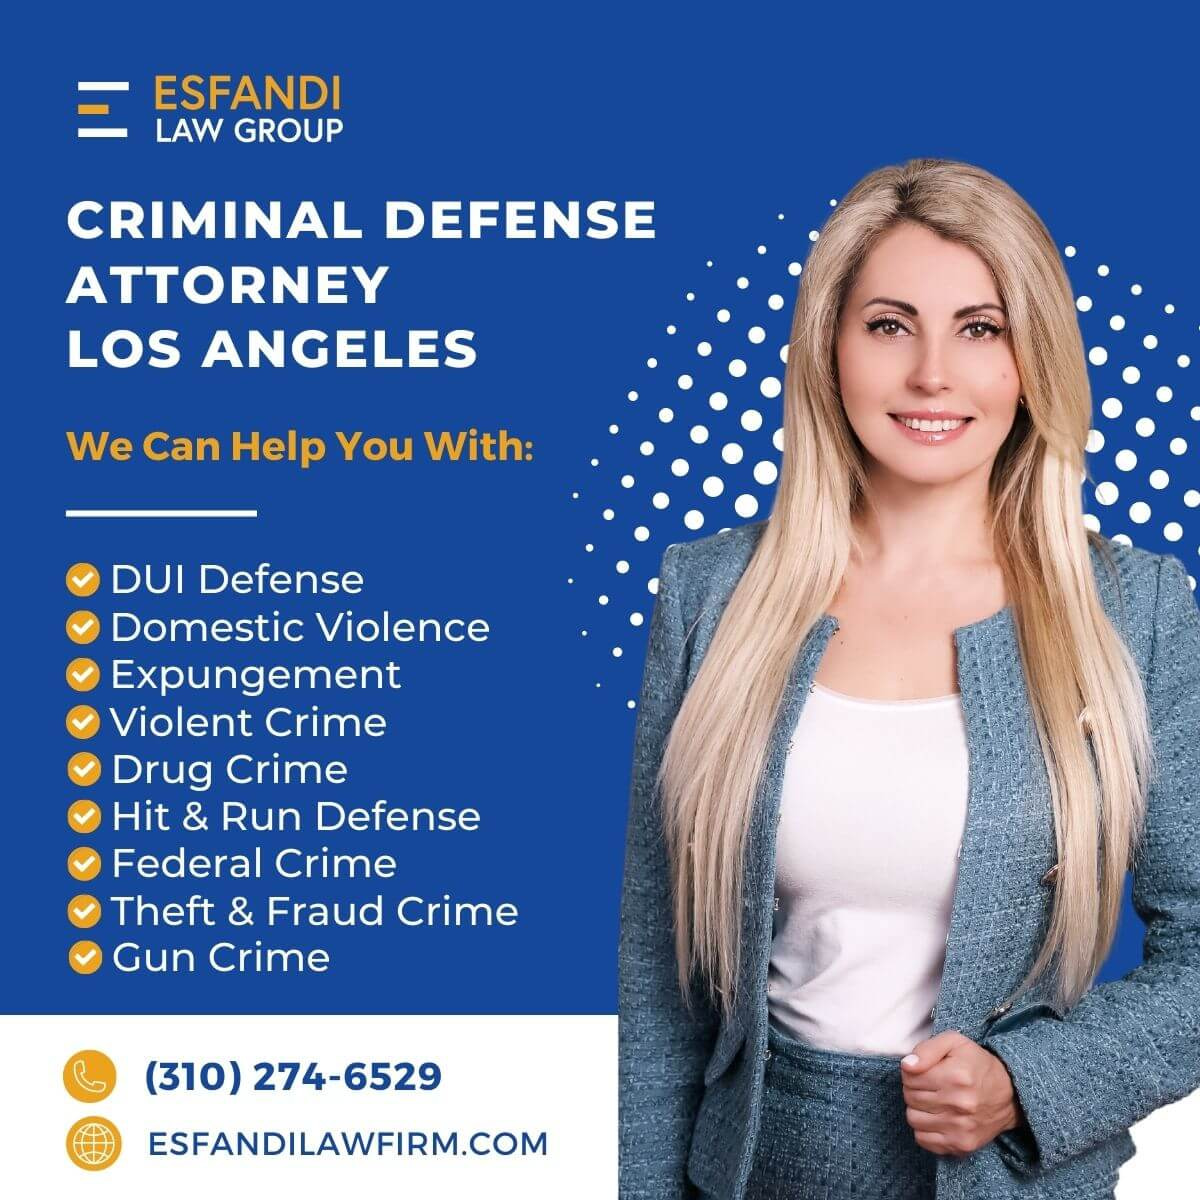 LA Defense Attorney - Call 310-274-6529